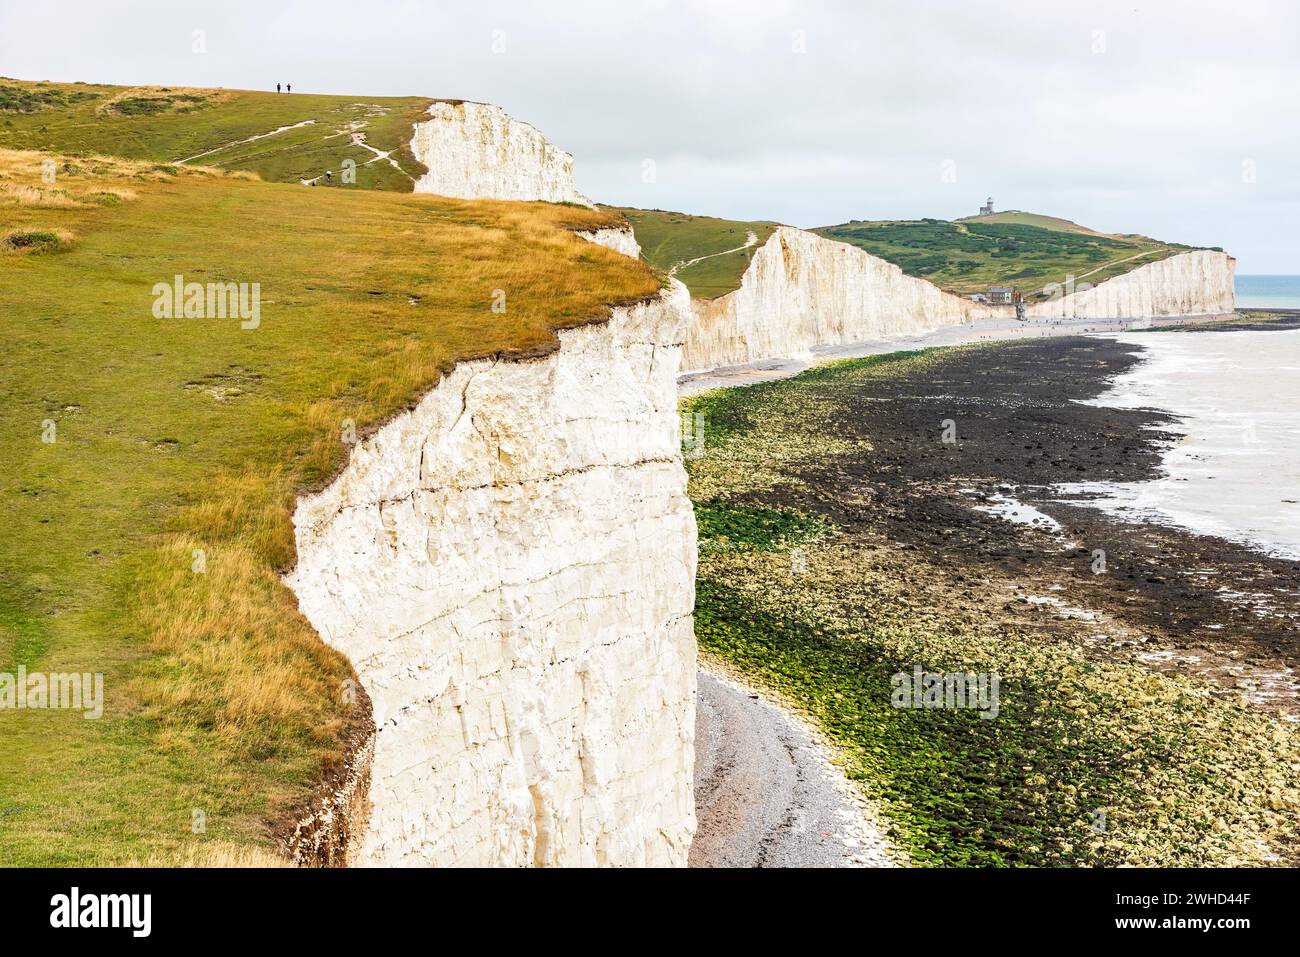 Le scogliere di gesso Seven Sisters sulla costa meridionale inglese tra Seaford e Eastbourne, West Sussex, Inghilterra, Regno Unito Foto Stock